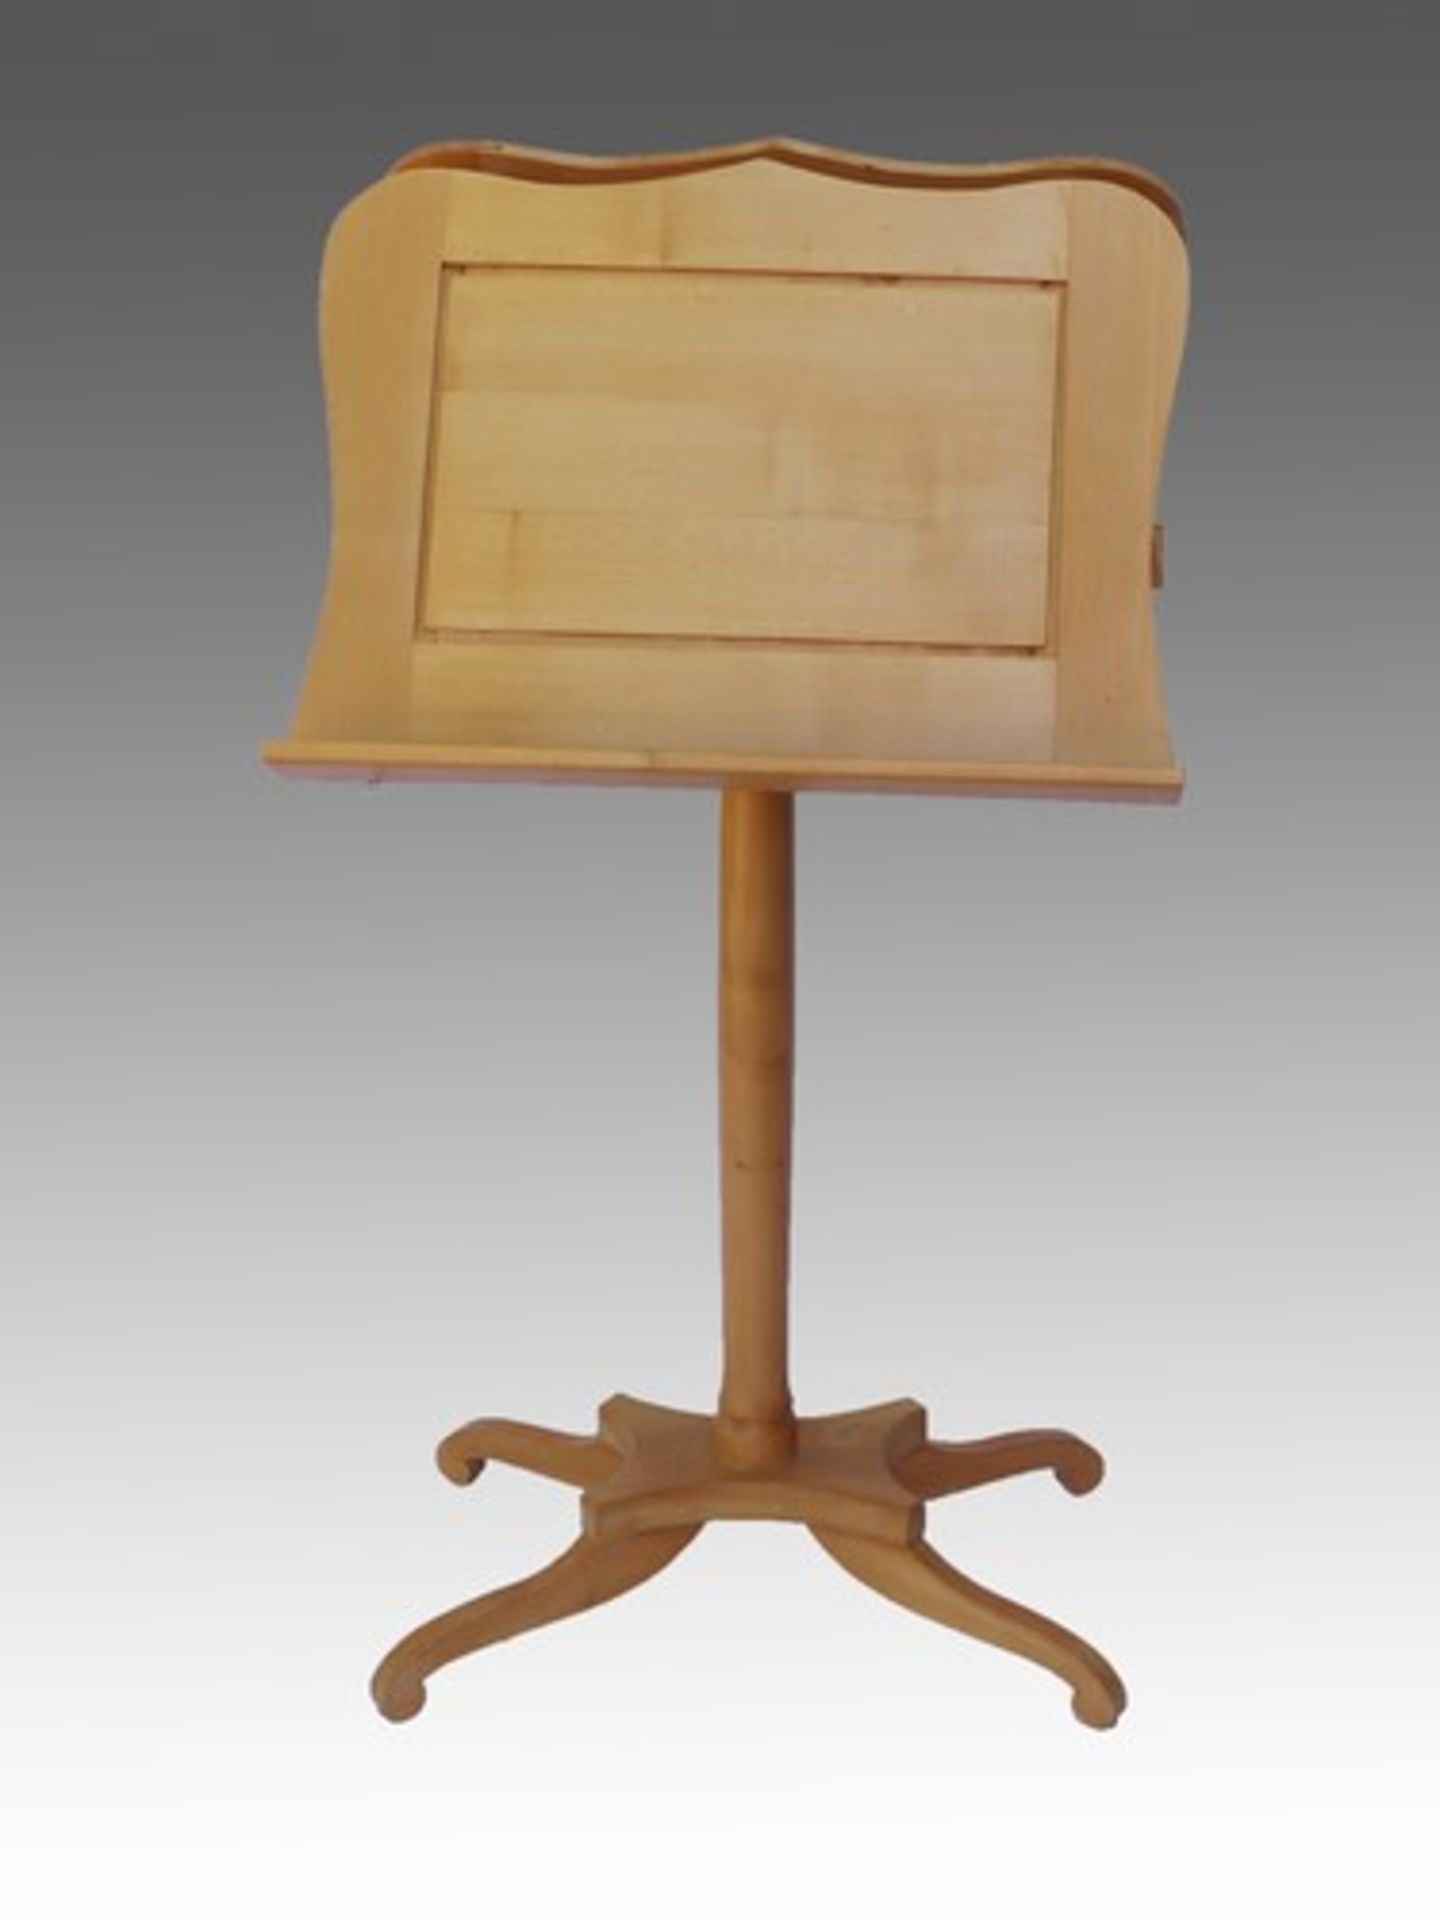 Notenständerhelles Holz, 4füßiger Stand, runder Schaft, zwei gegenüberliegende ausklappbare - Bild 2 aus 5